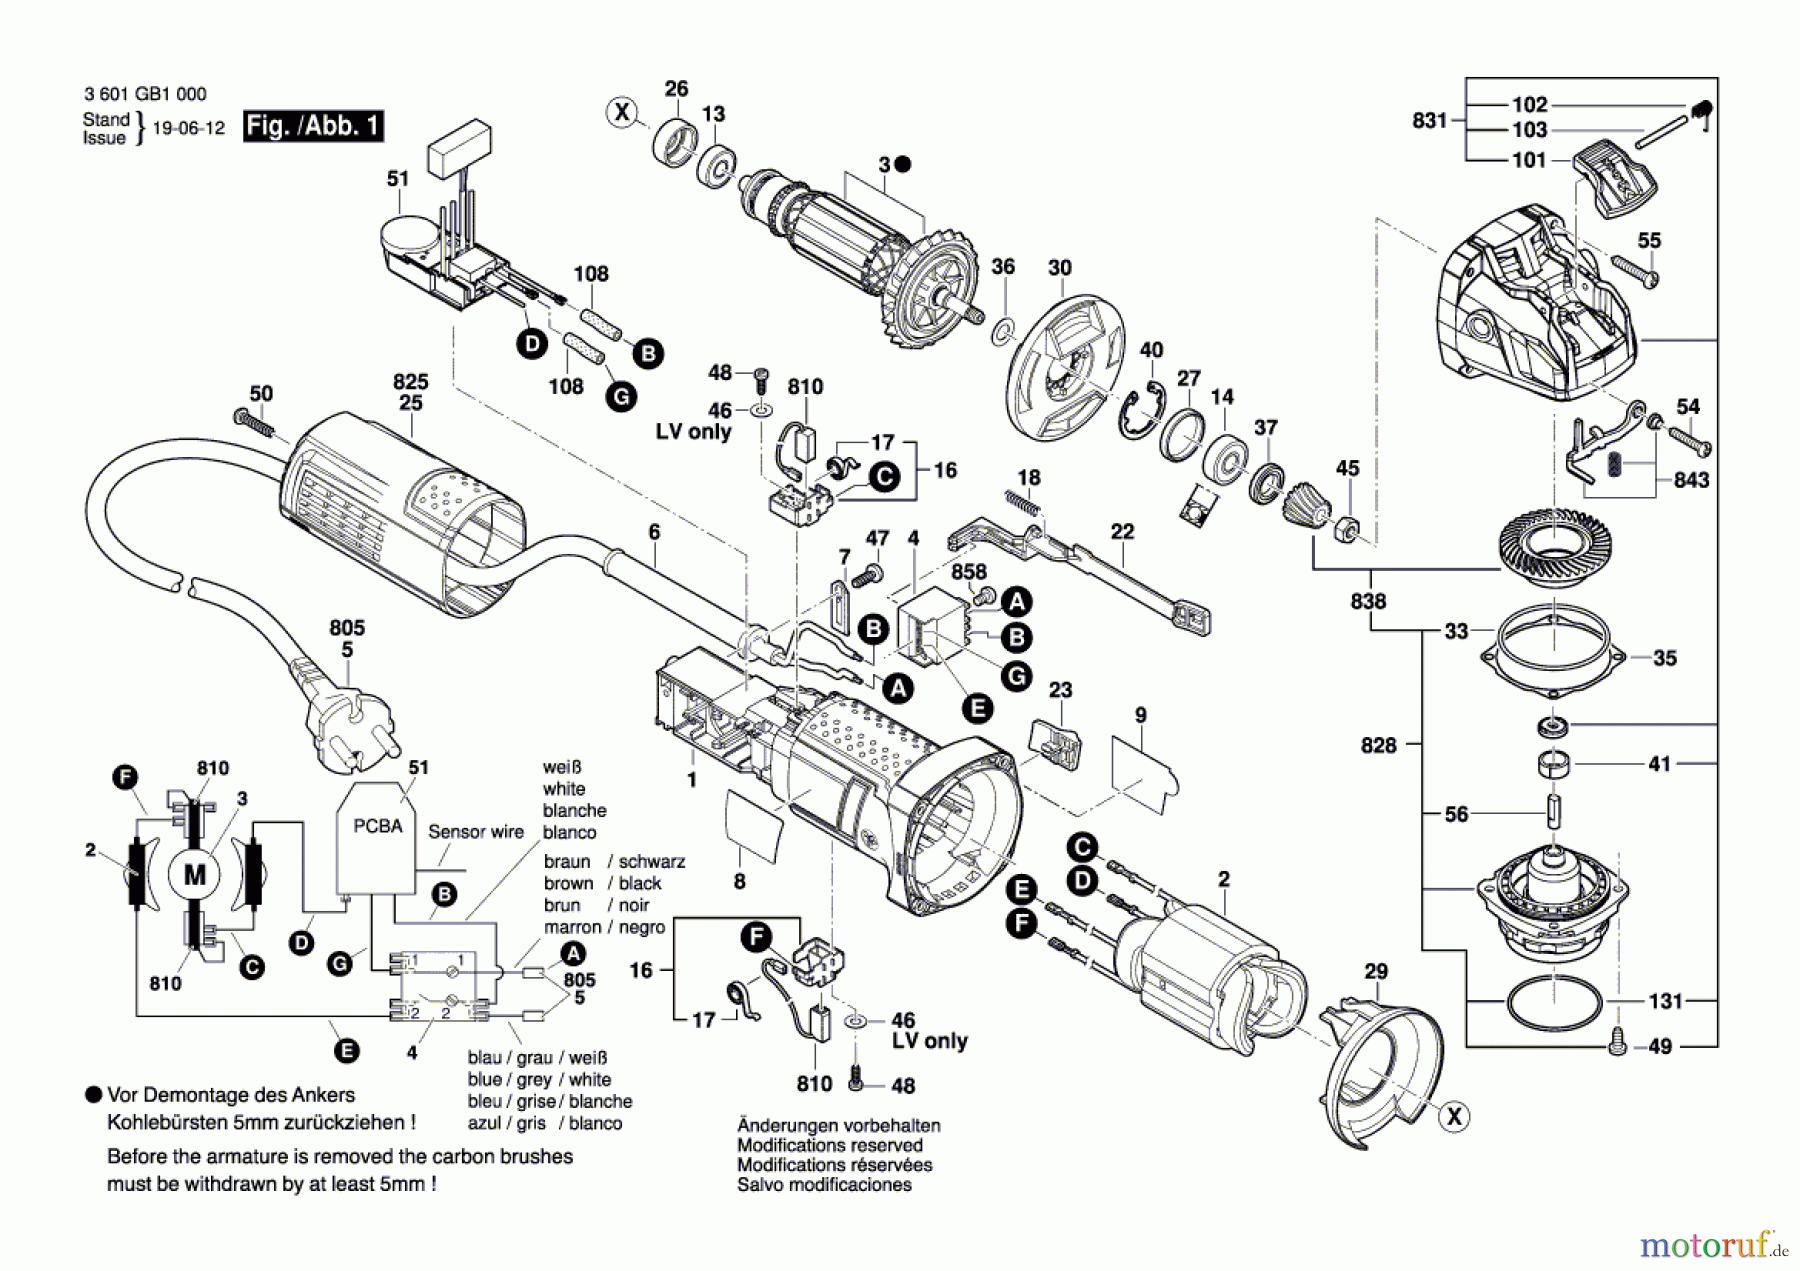  Bosch Werkzeug Winkelschleifer GWX 9-125 S Seite 1